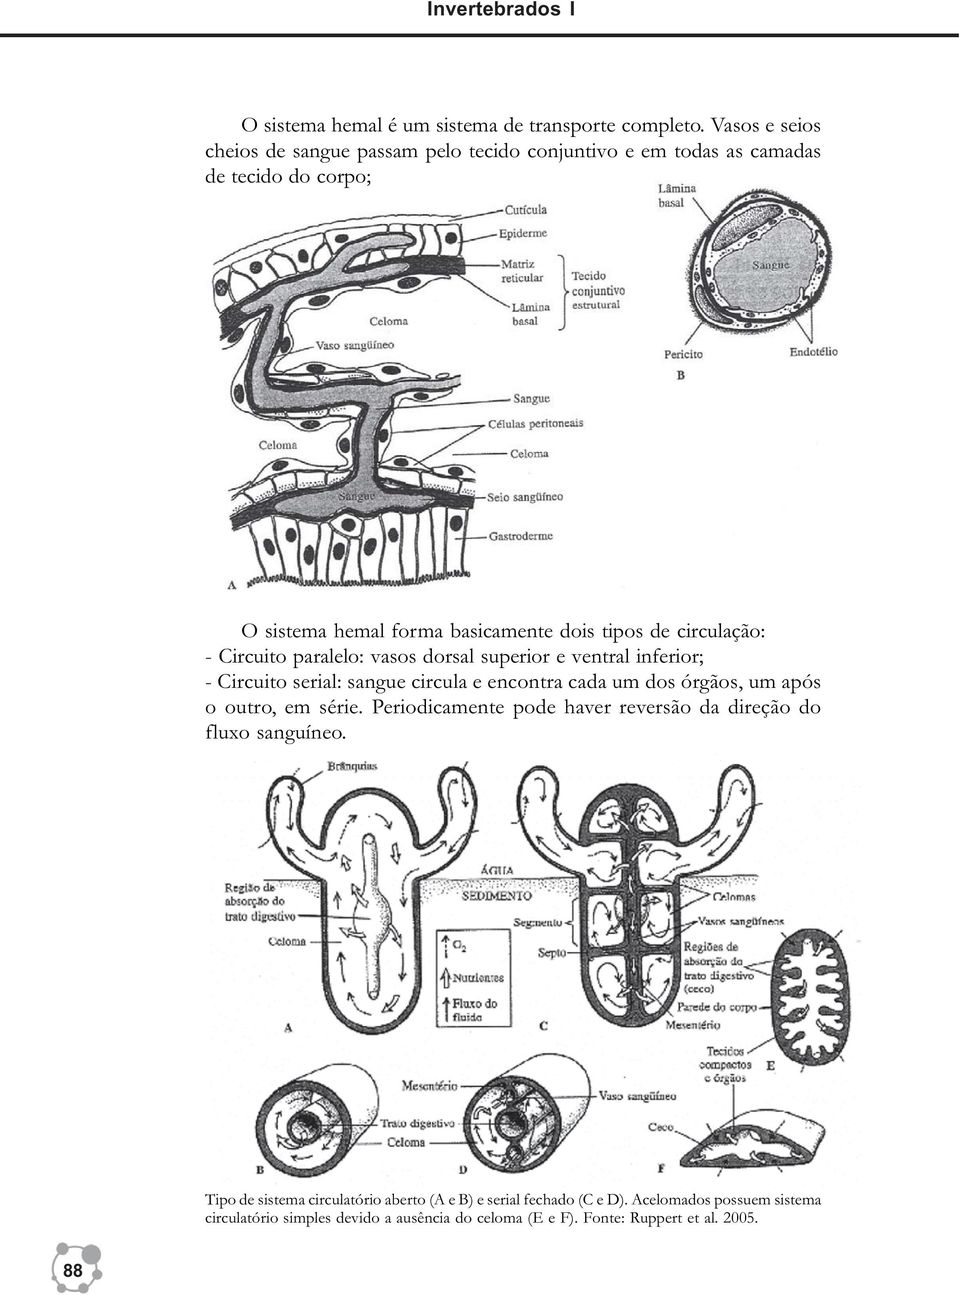 circulação: - Circuito paralelo: vasos dorsal superior e ventral inferior; - Circuito serial: sangue circula e encontra cada um dos órgãos, um após o outro, em